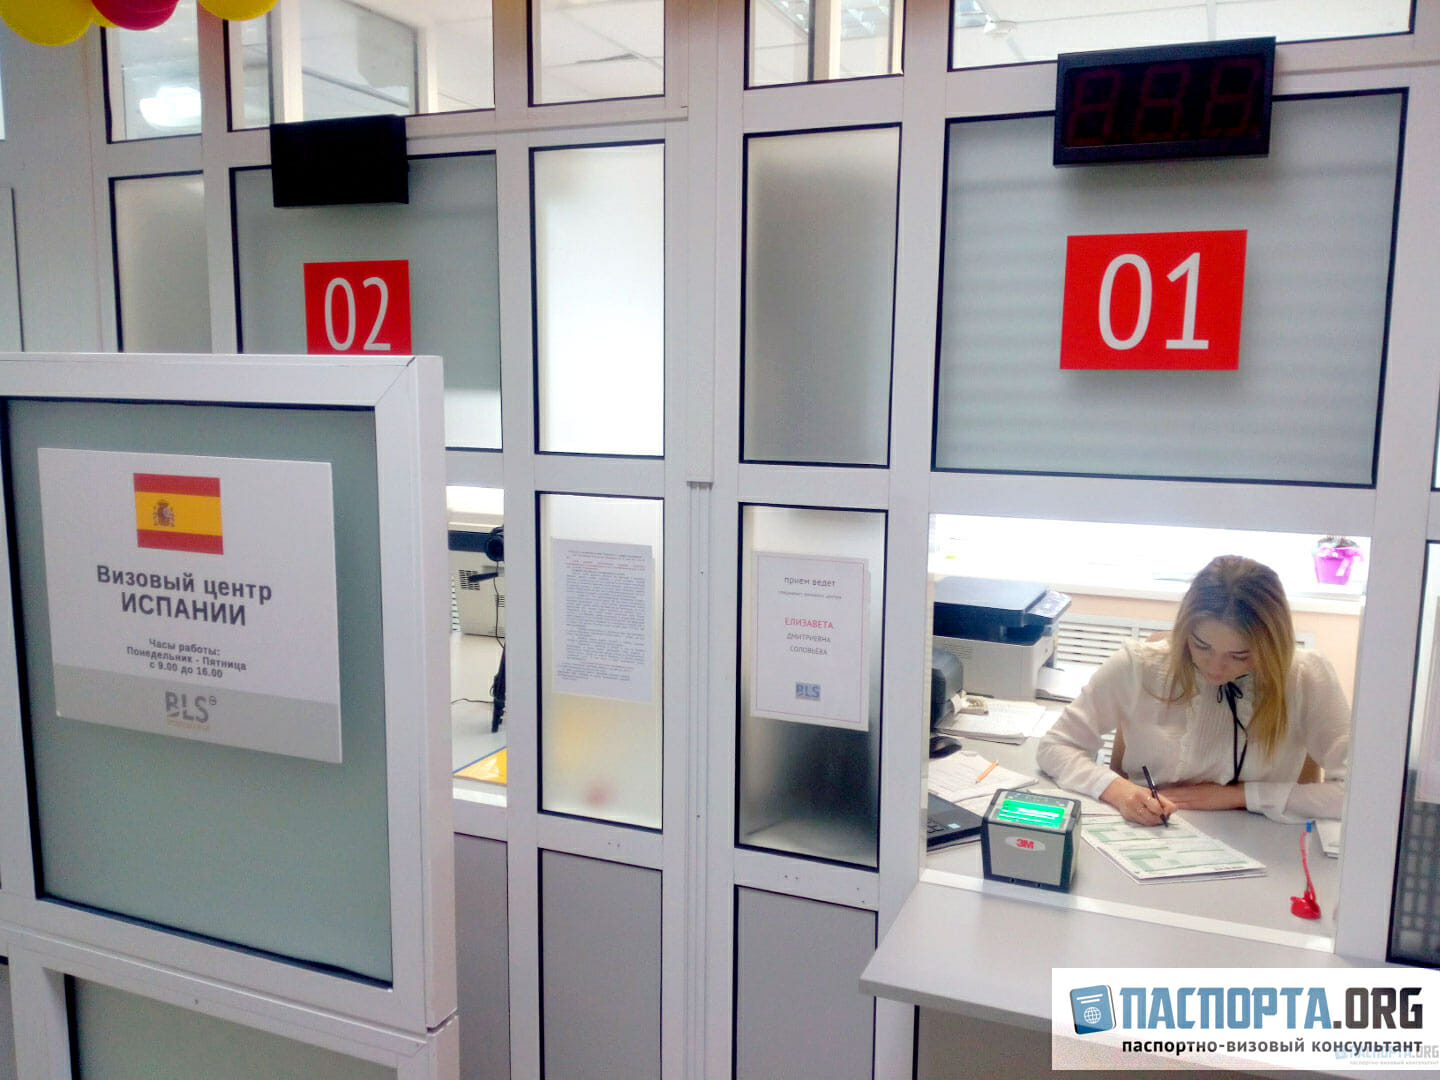 Самый простой и удобный способ получить испанскую визу – обратиться в визовый центр.